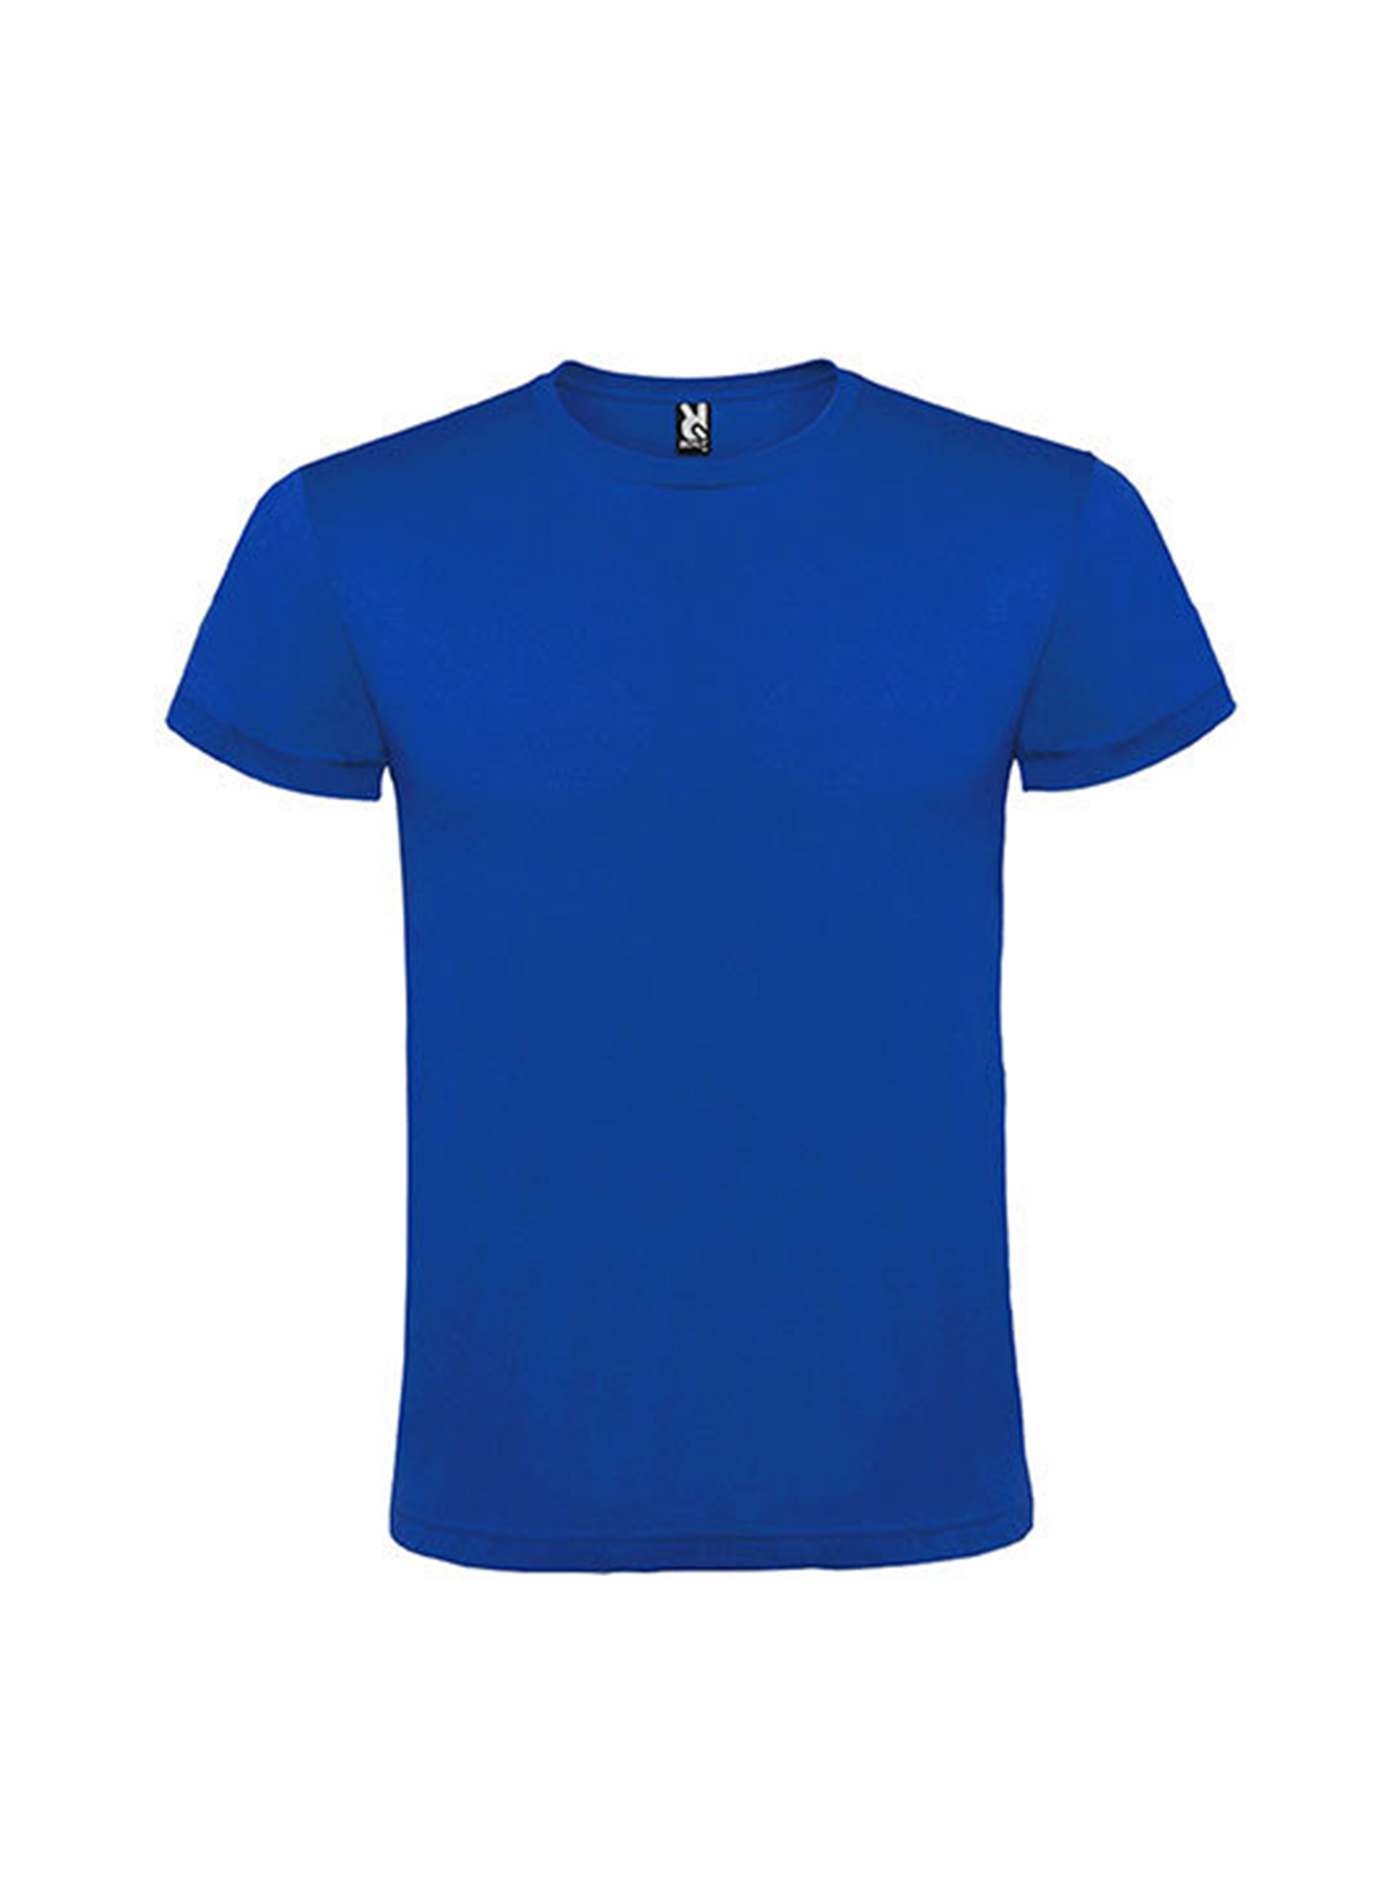 Pánské tričko Roly Atomic - Královská modrá XL